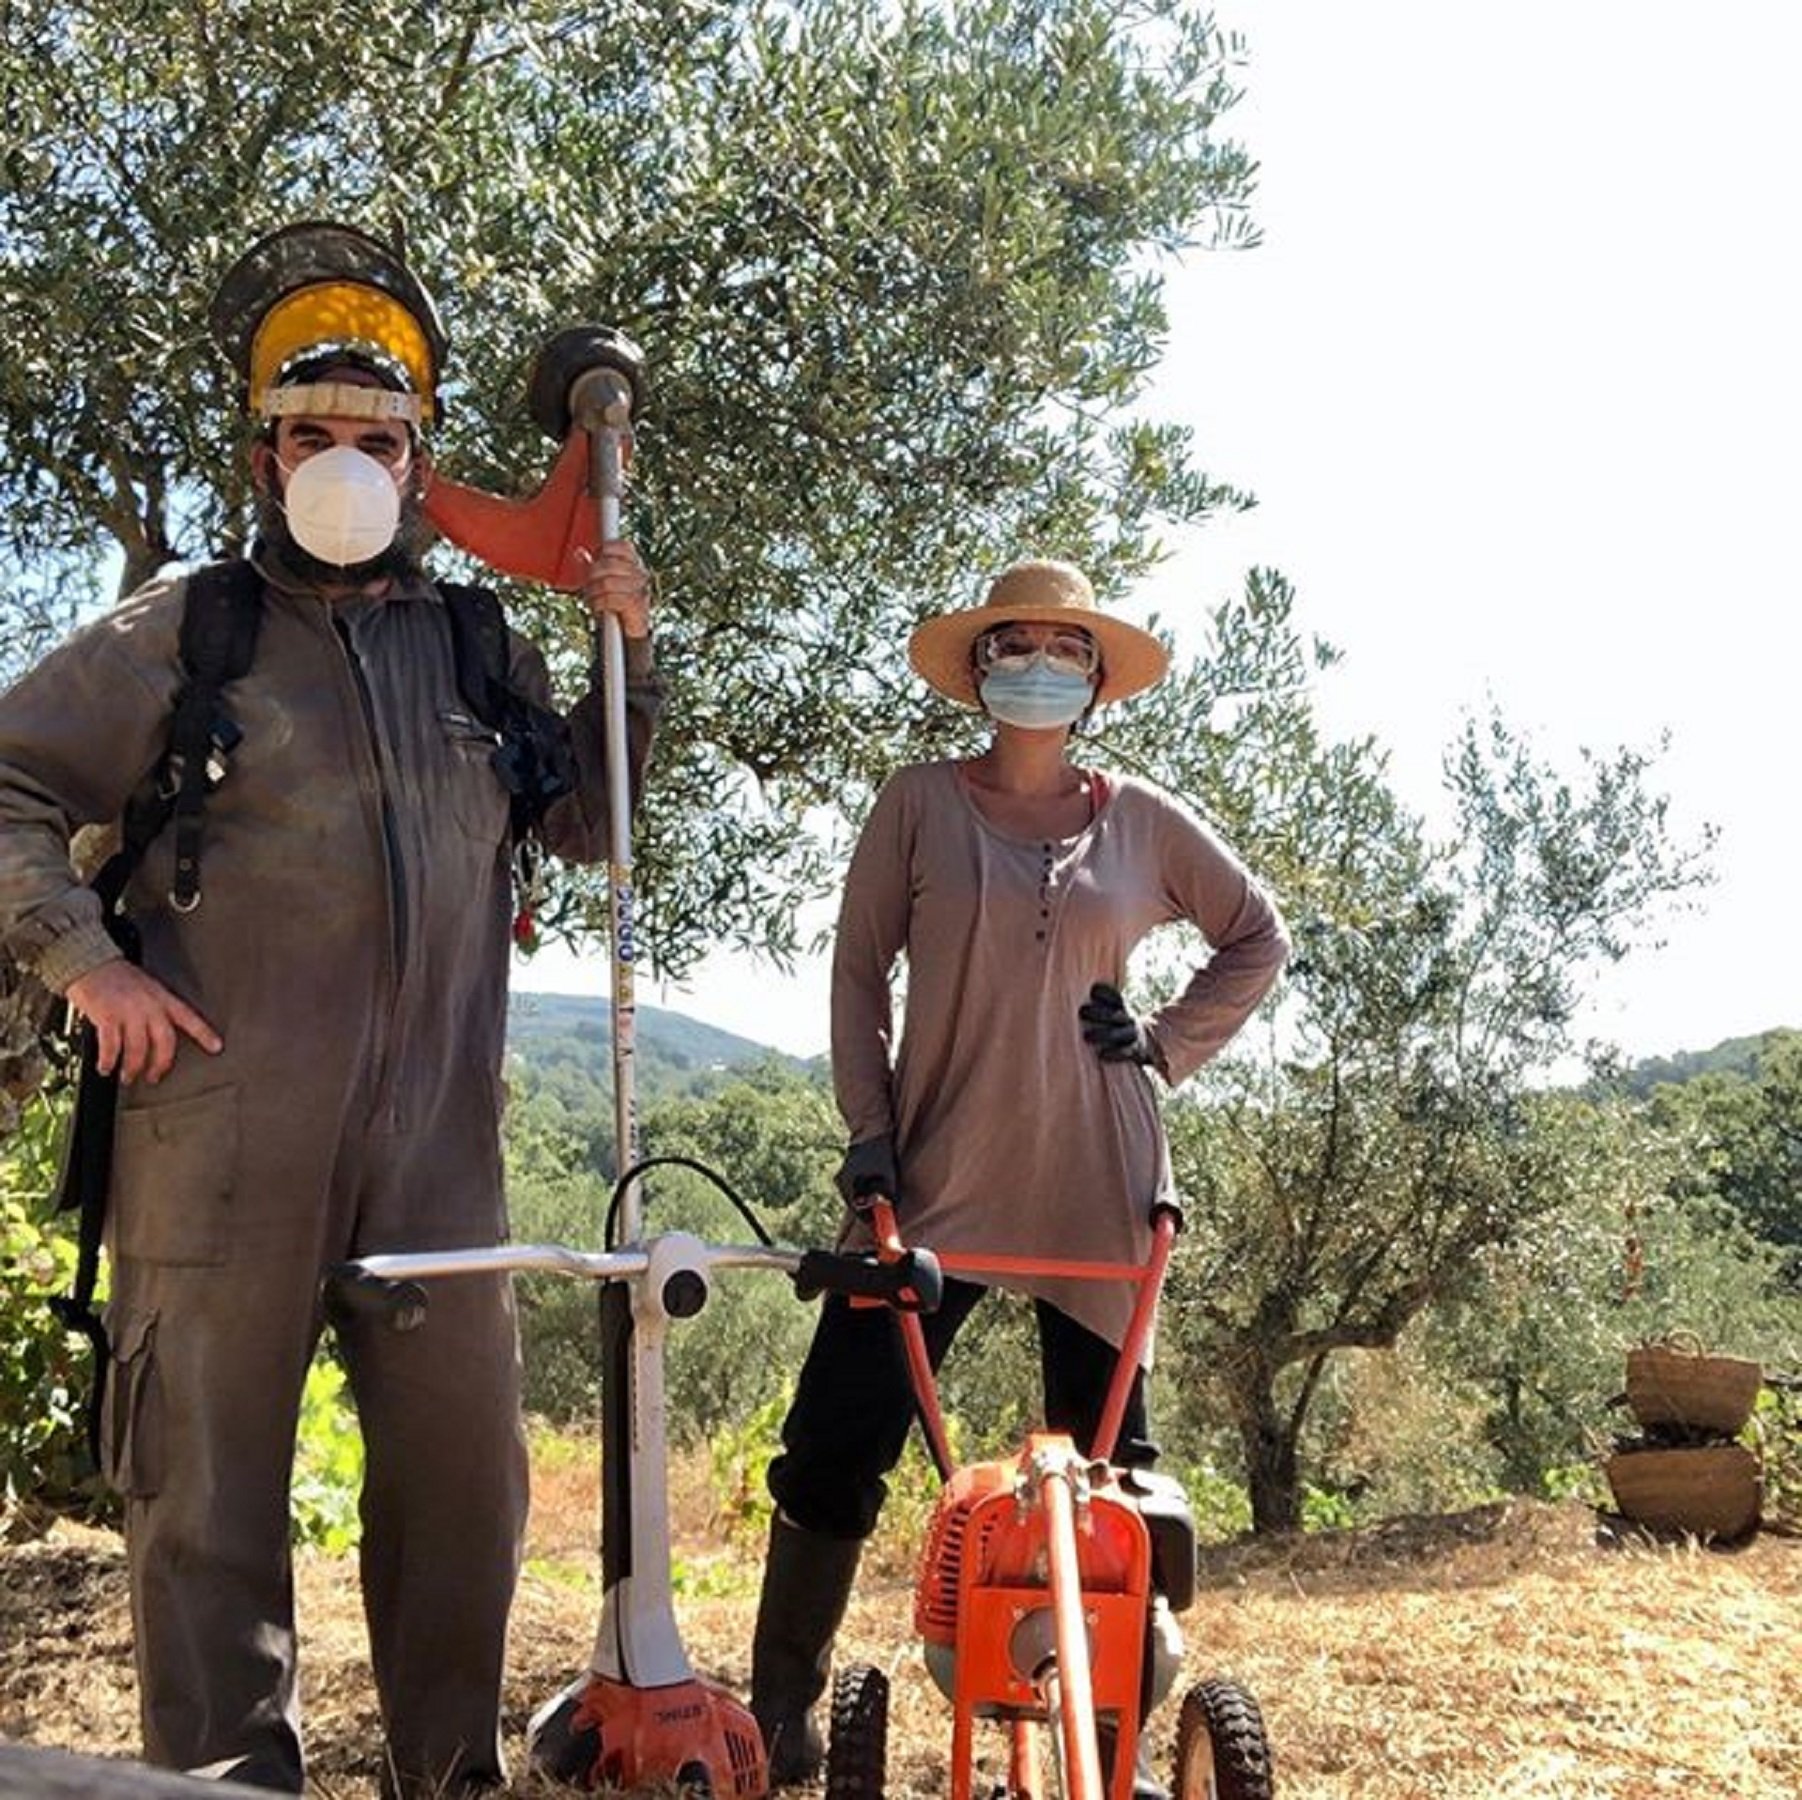 La cara desconocida de 2 actores de TV3: son pareja y elaboran aceite en Extremadura